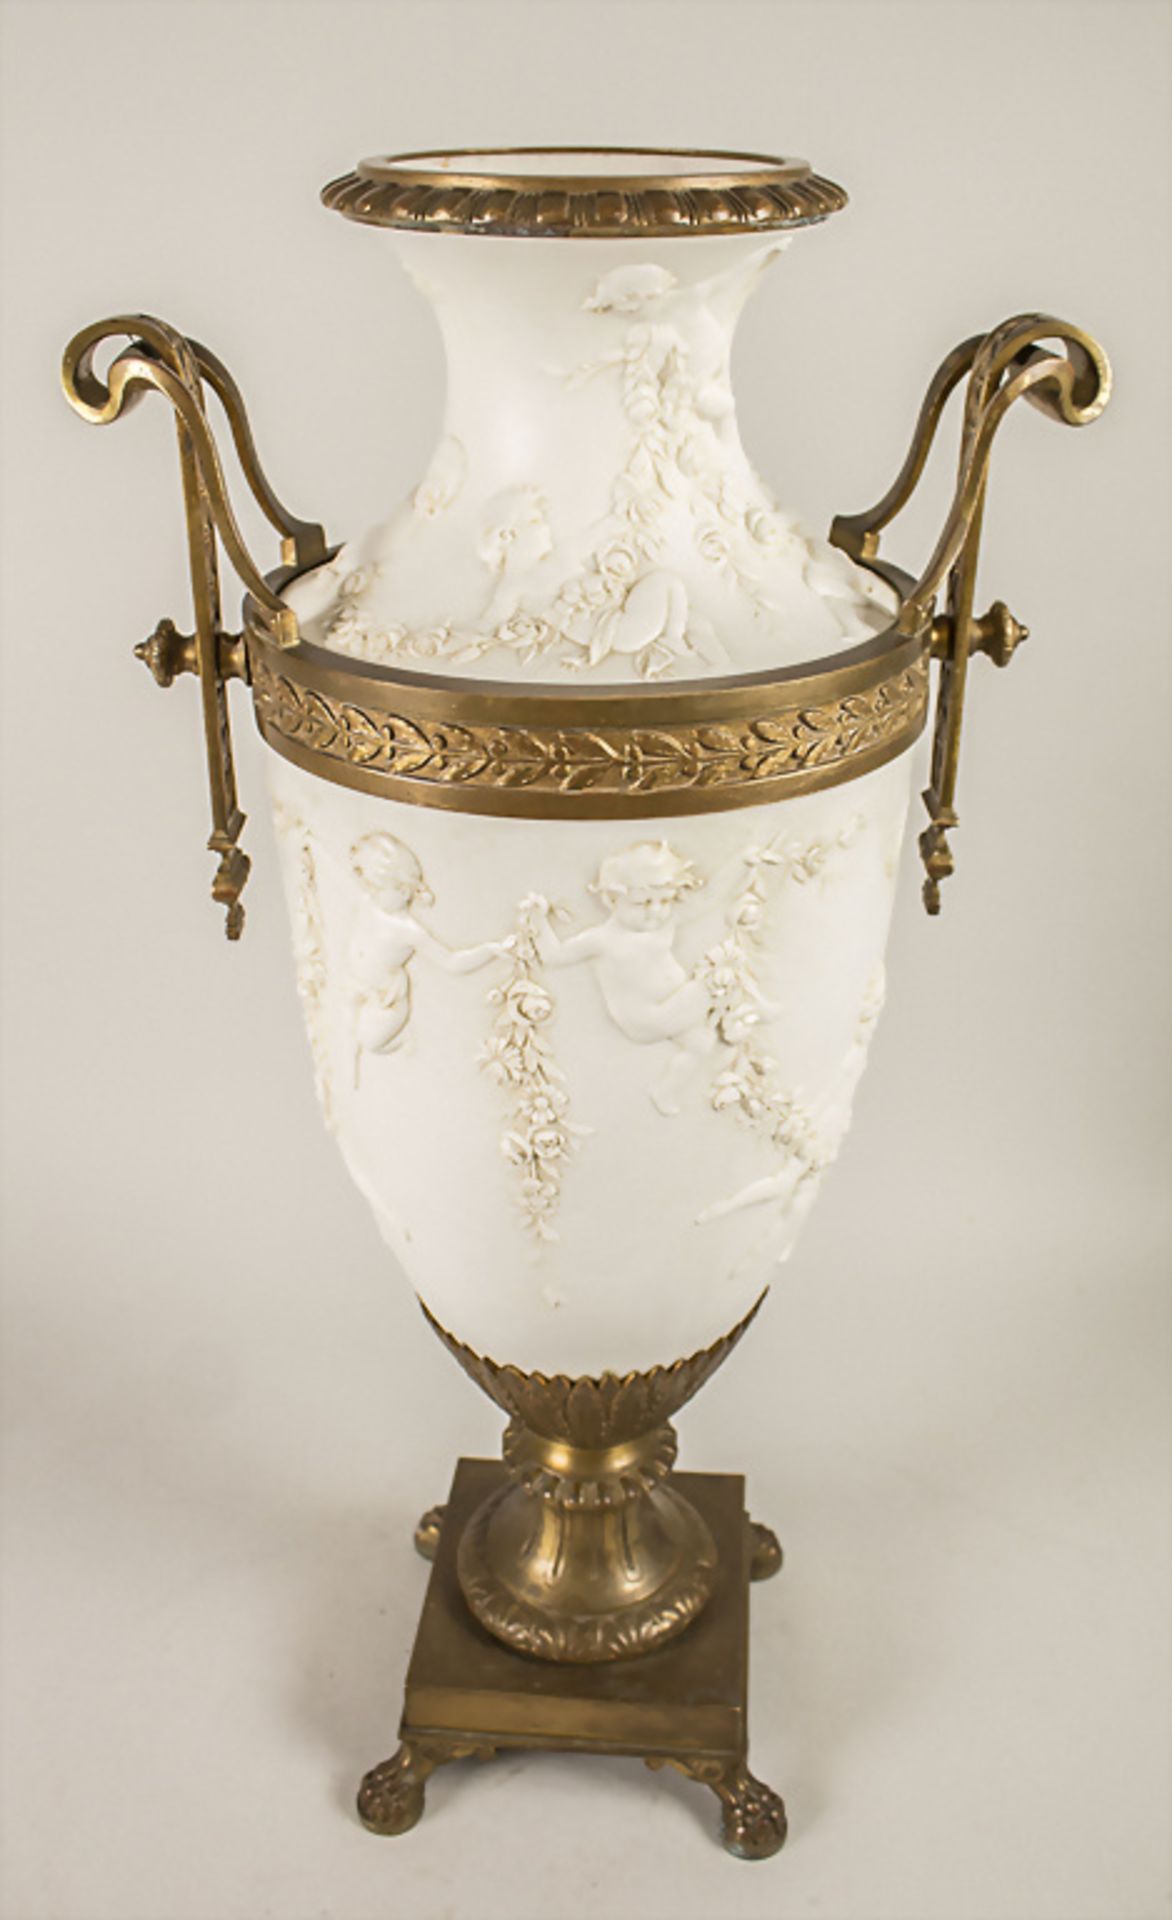 Große Empire Henkel-Prunkvase / A large Empire splendid vase with handles, wohl Sèvres, 19. Jh.